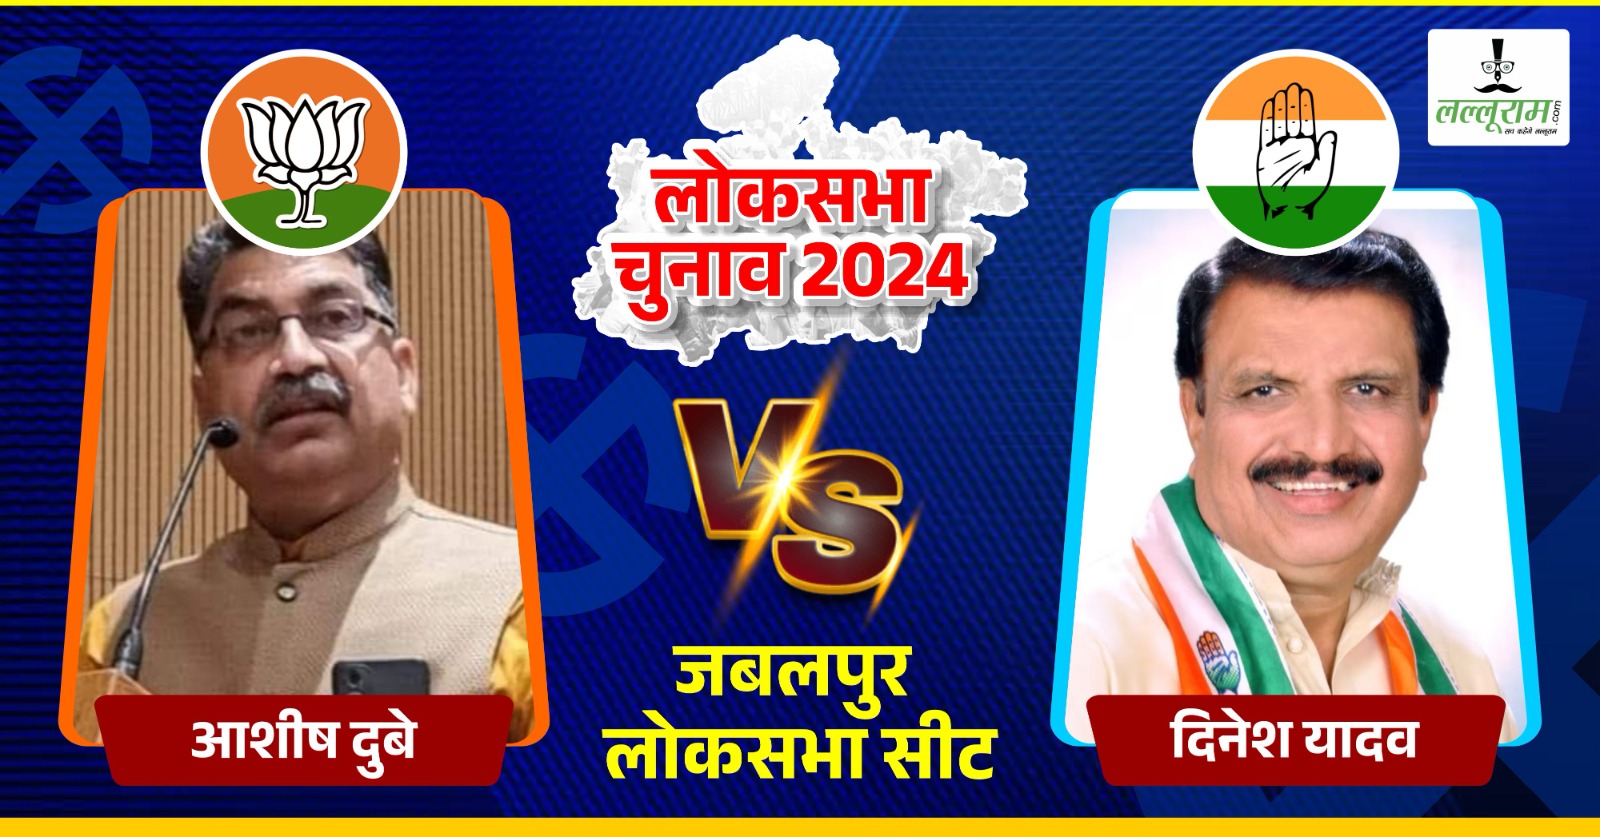 Jabalpur Lok Sabha Election 2024: वोटिंग से पहले जान लें सबकुछ, कौन कितने पानी में, क्यों करें इन्हें वोट…